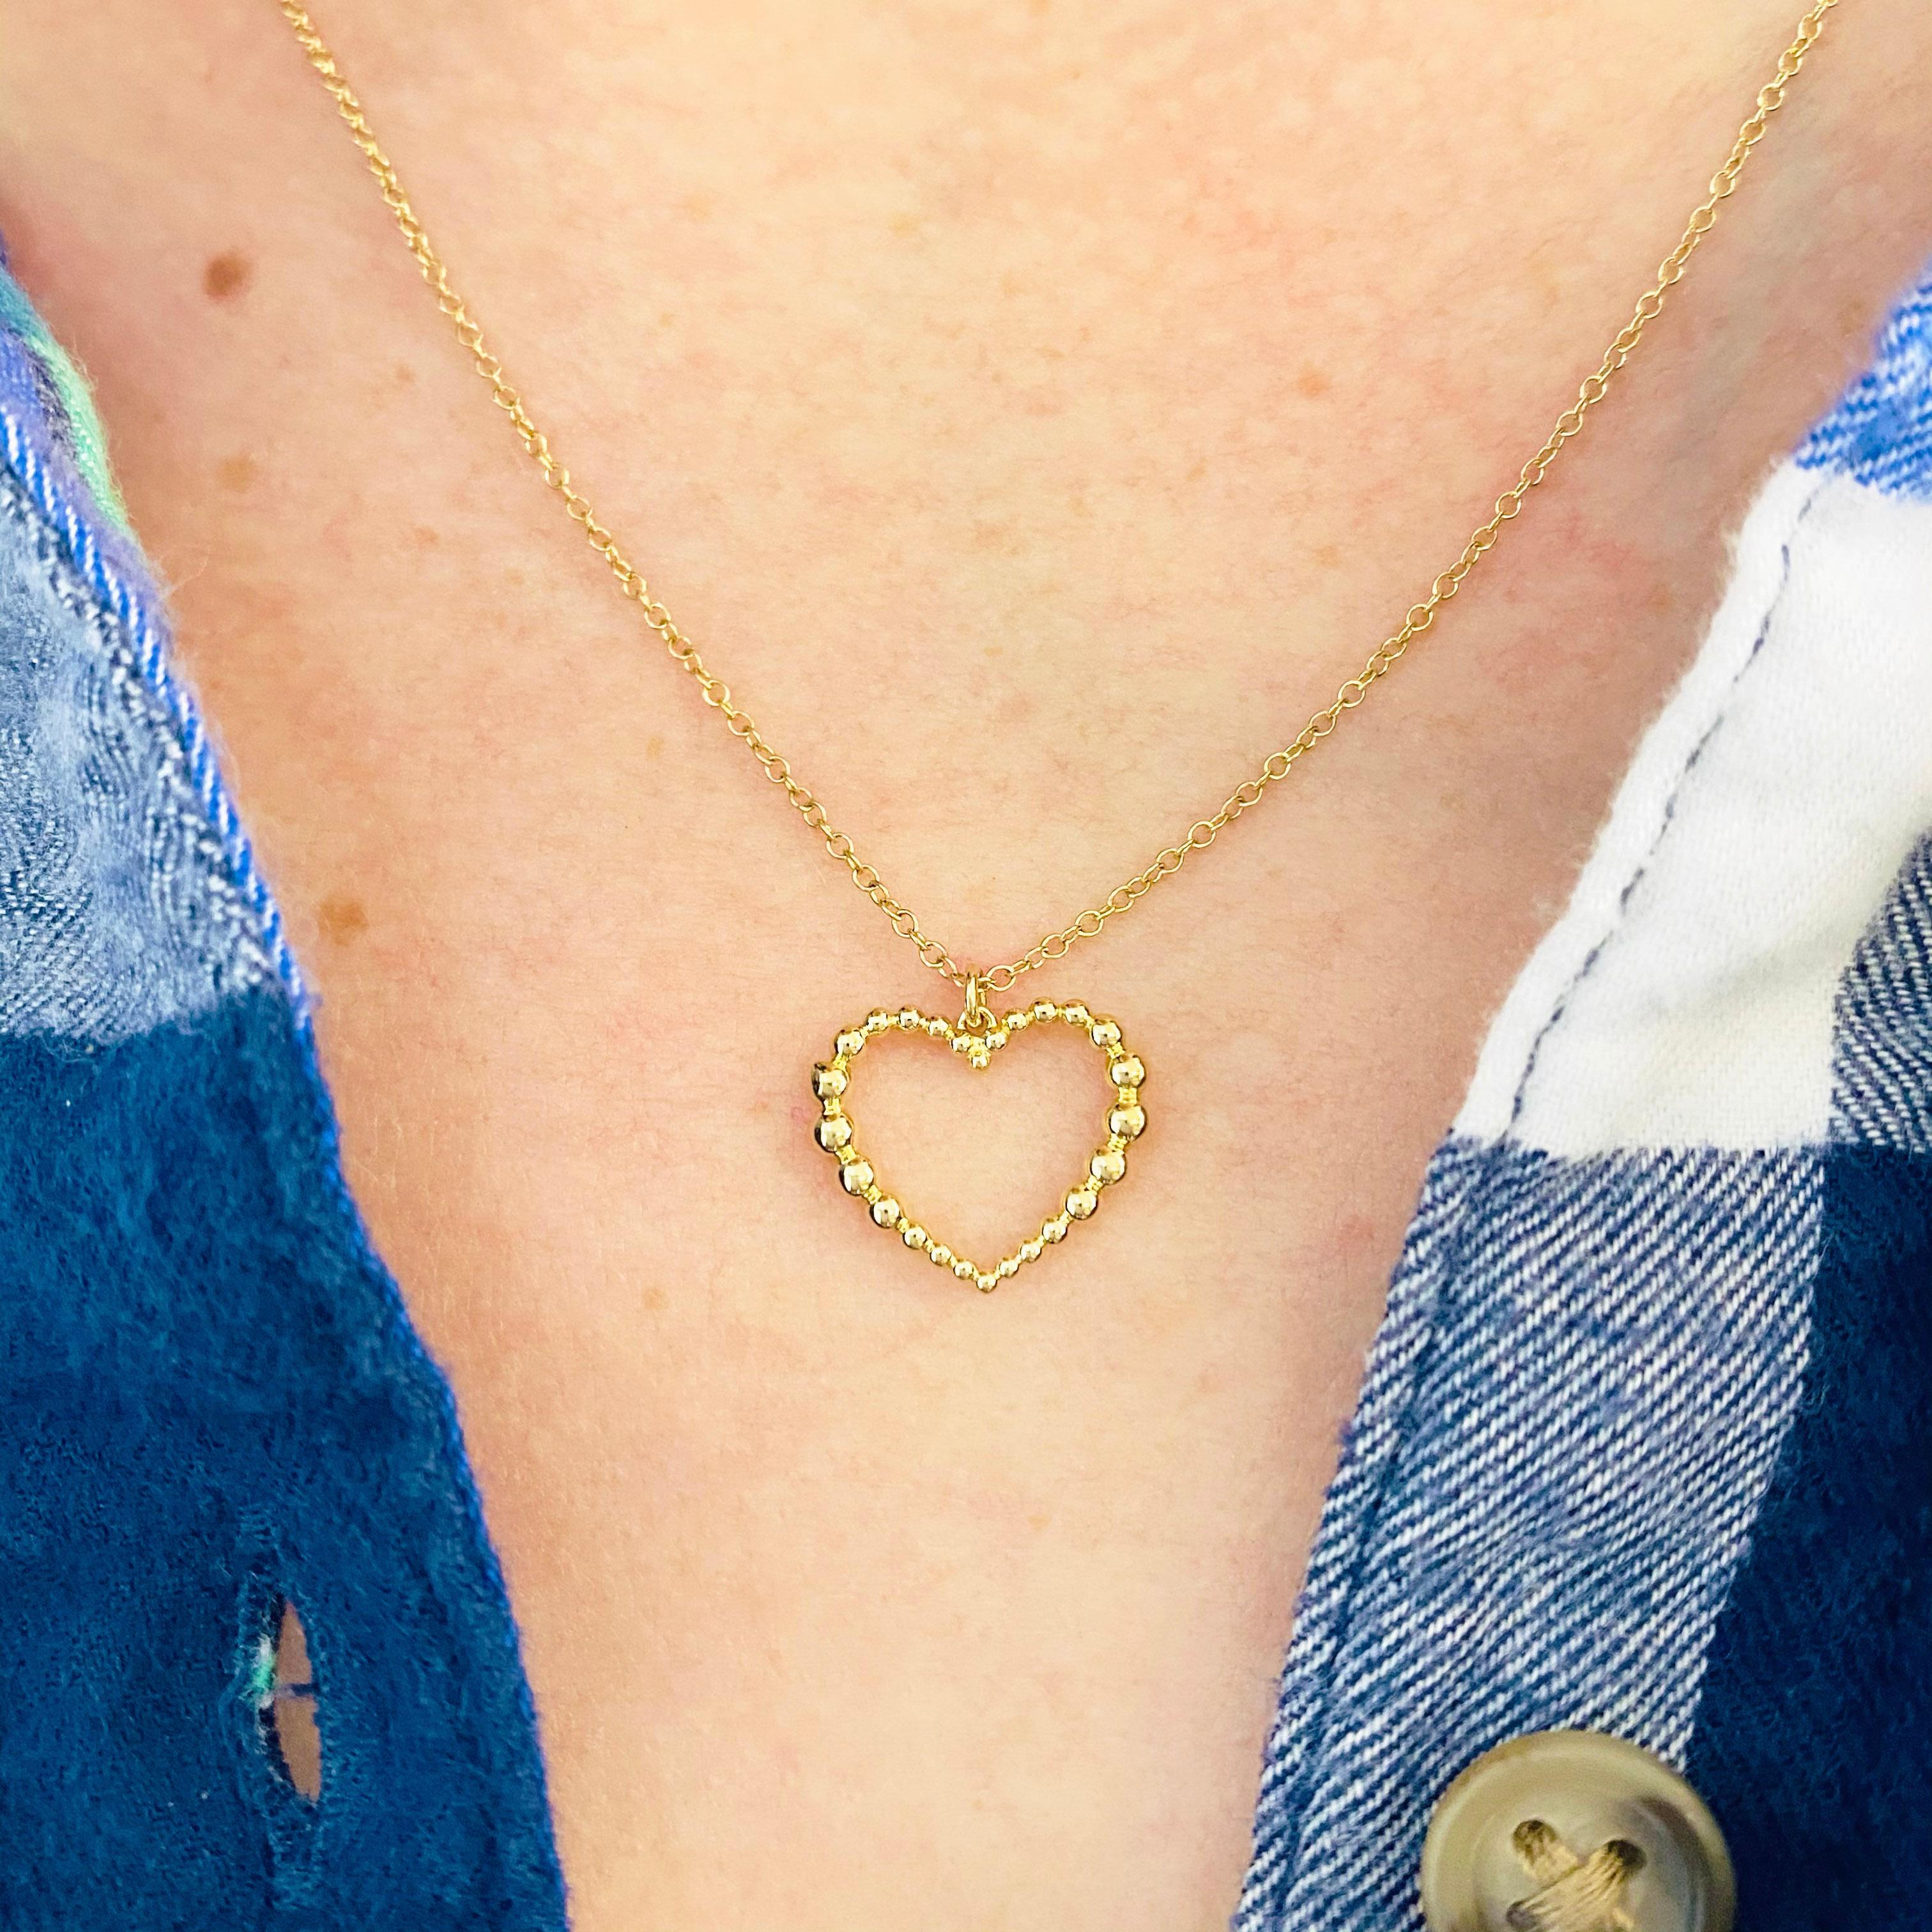 Ce magnifique petit pendentif à cœur ouvert en or jaune 14k est sûr de faire sourire tout le monde ! Ce collier est magnifique porté seul, mais aussi dans une pile de colliers. Les perles de ce collier sont tridimensionnelles car elles font tout le